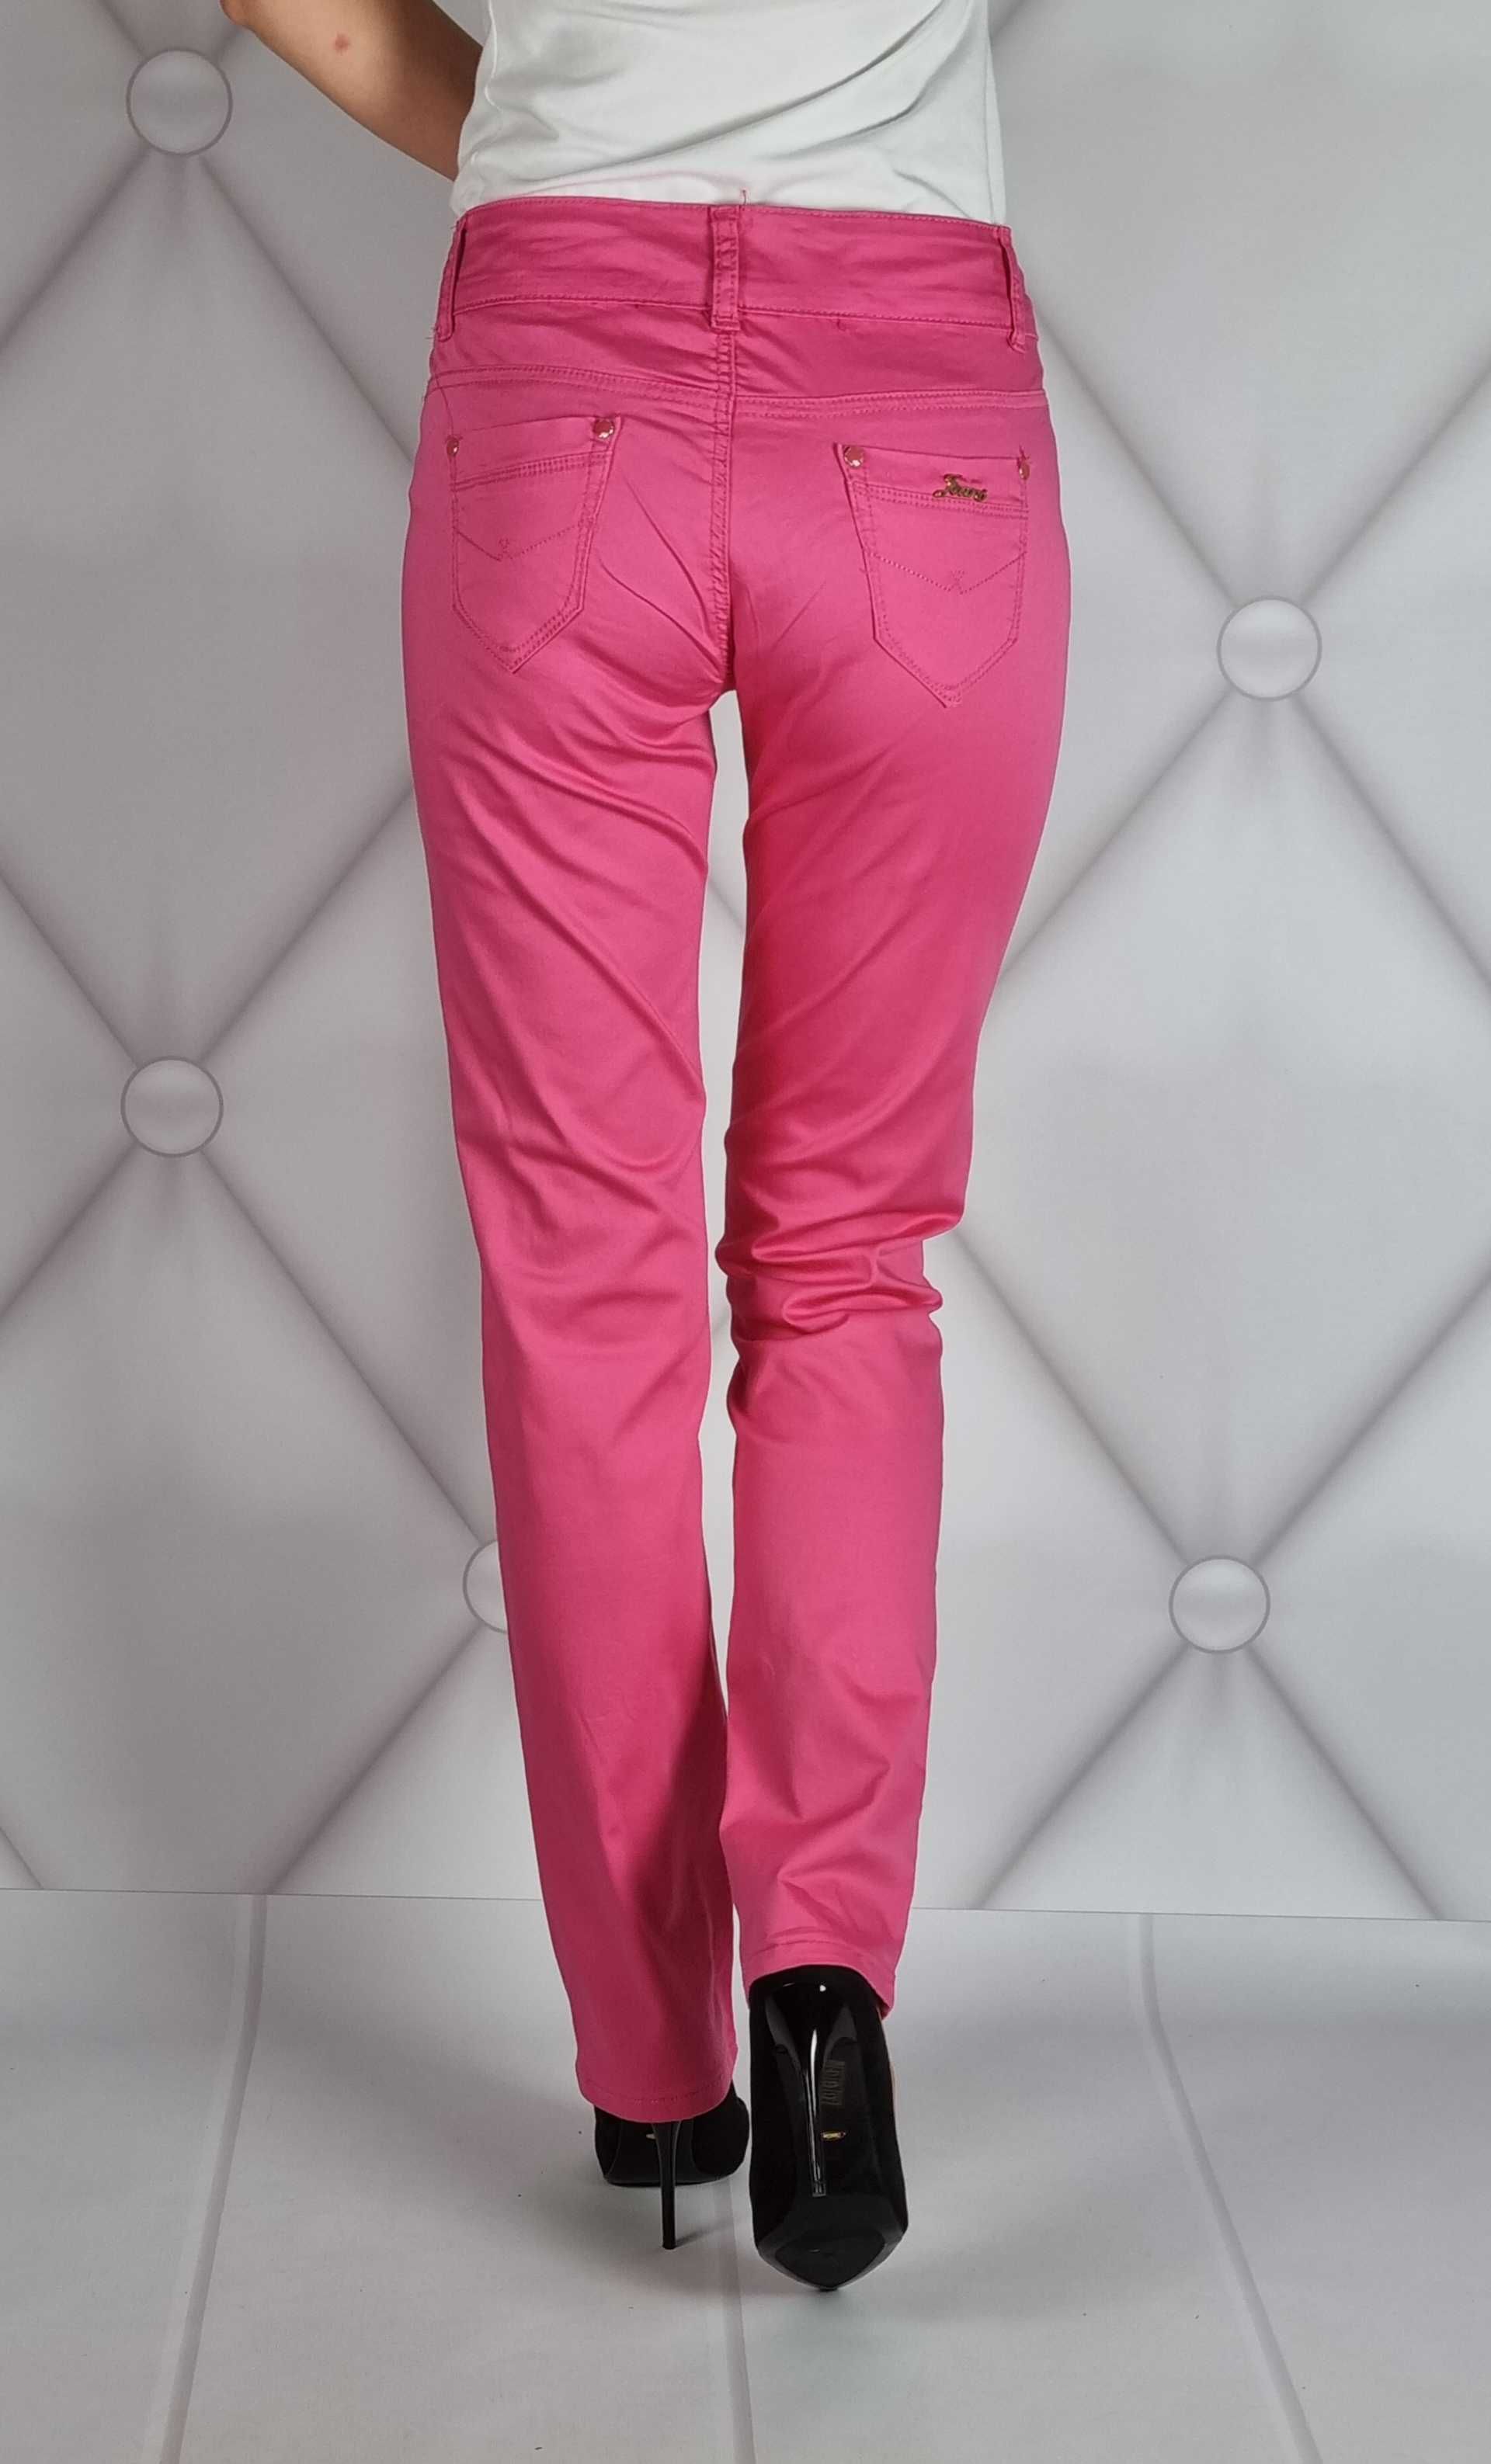 Spodnie klasyczne damskie różowe rozmiar 32/XL